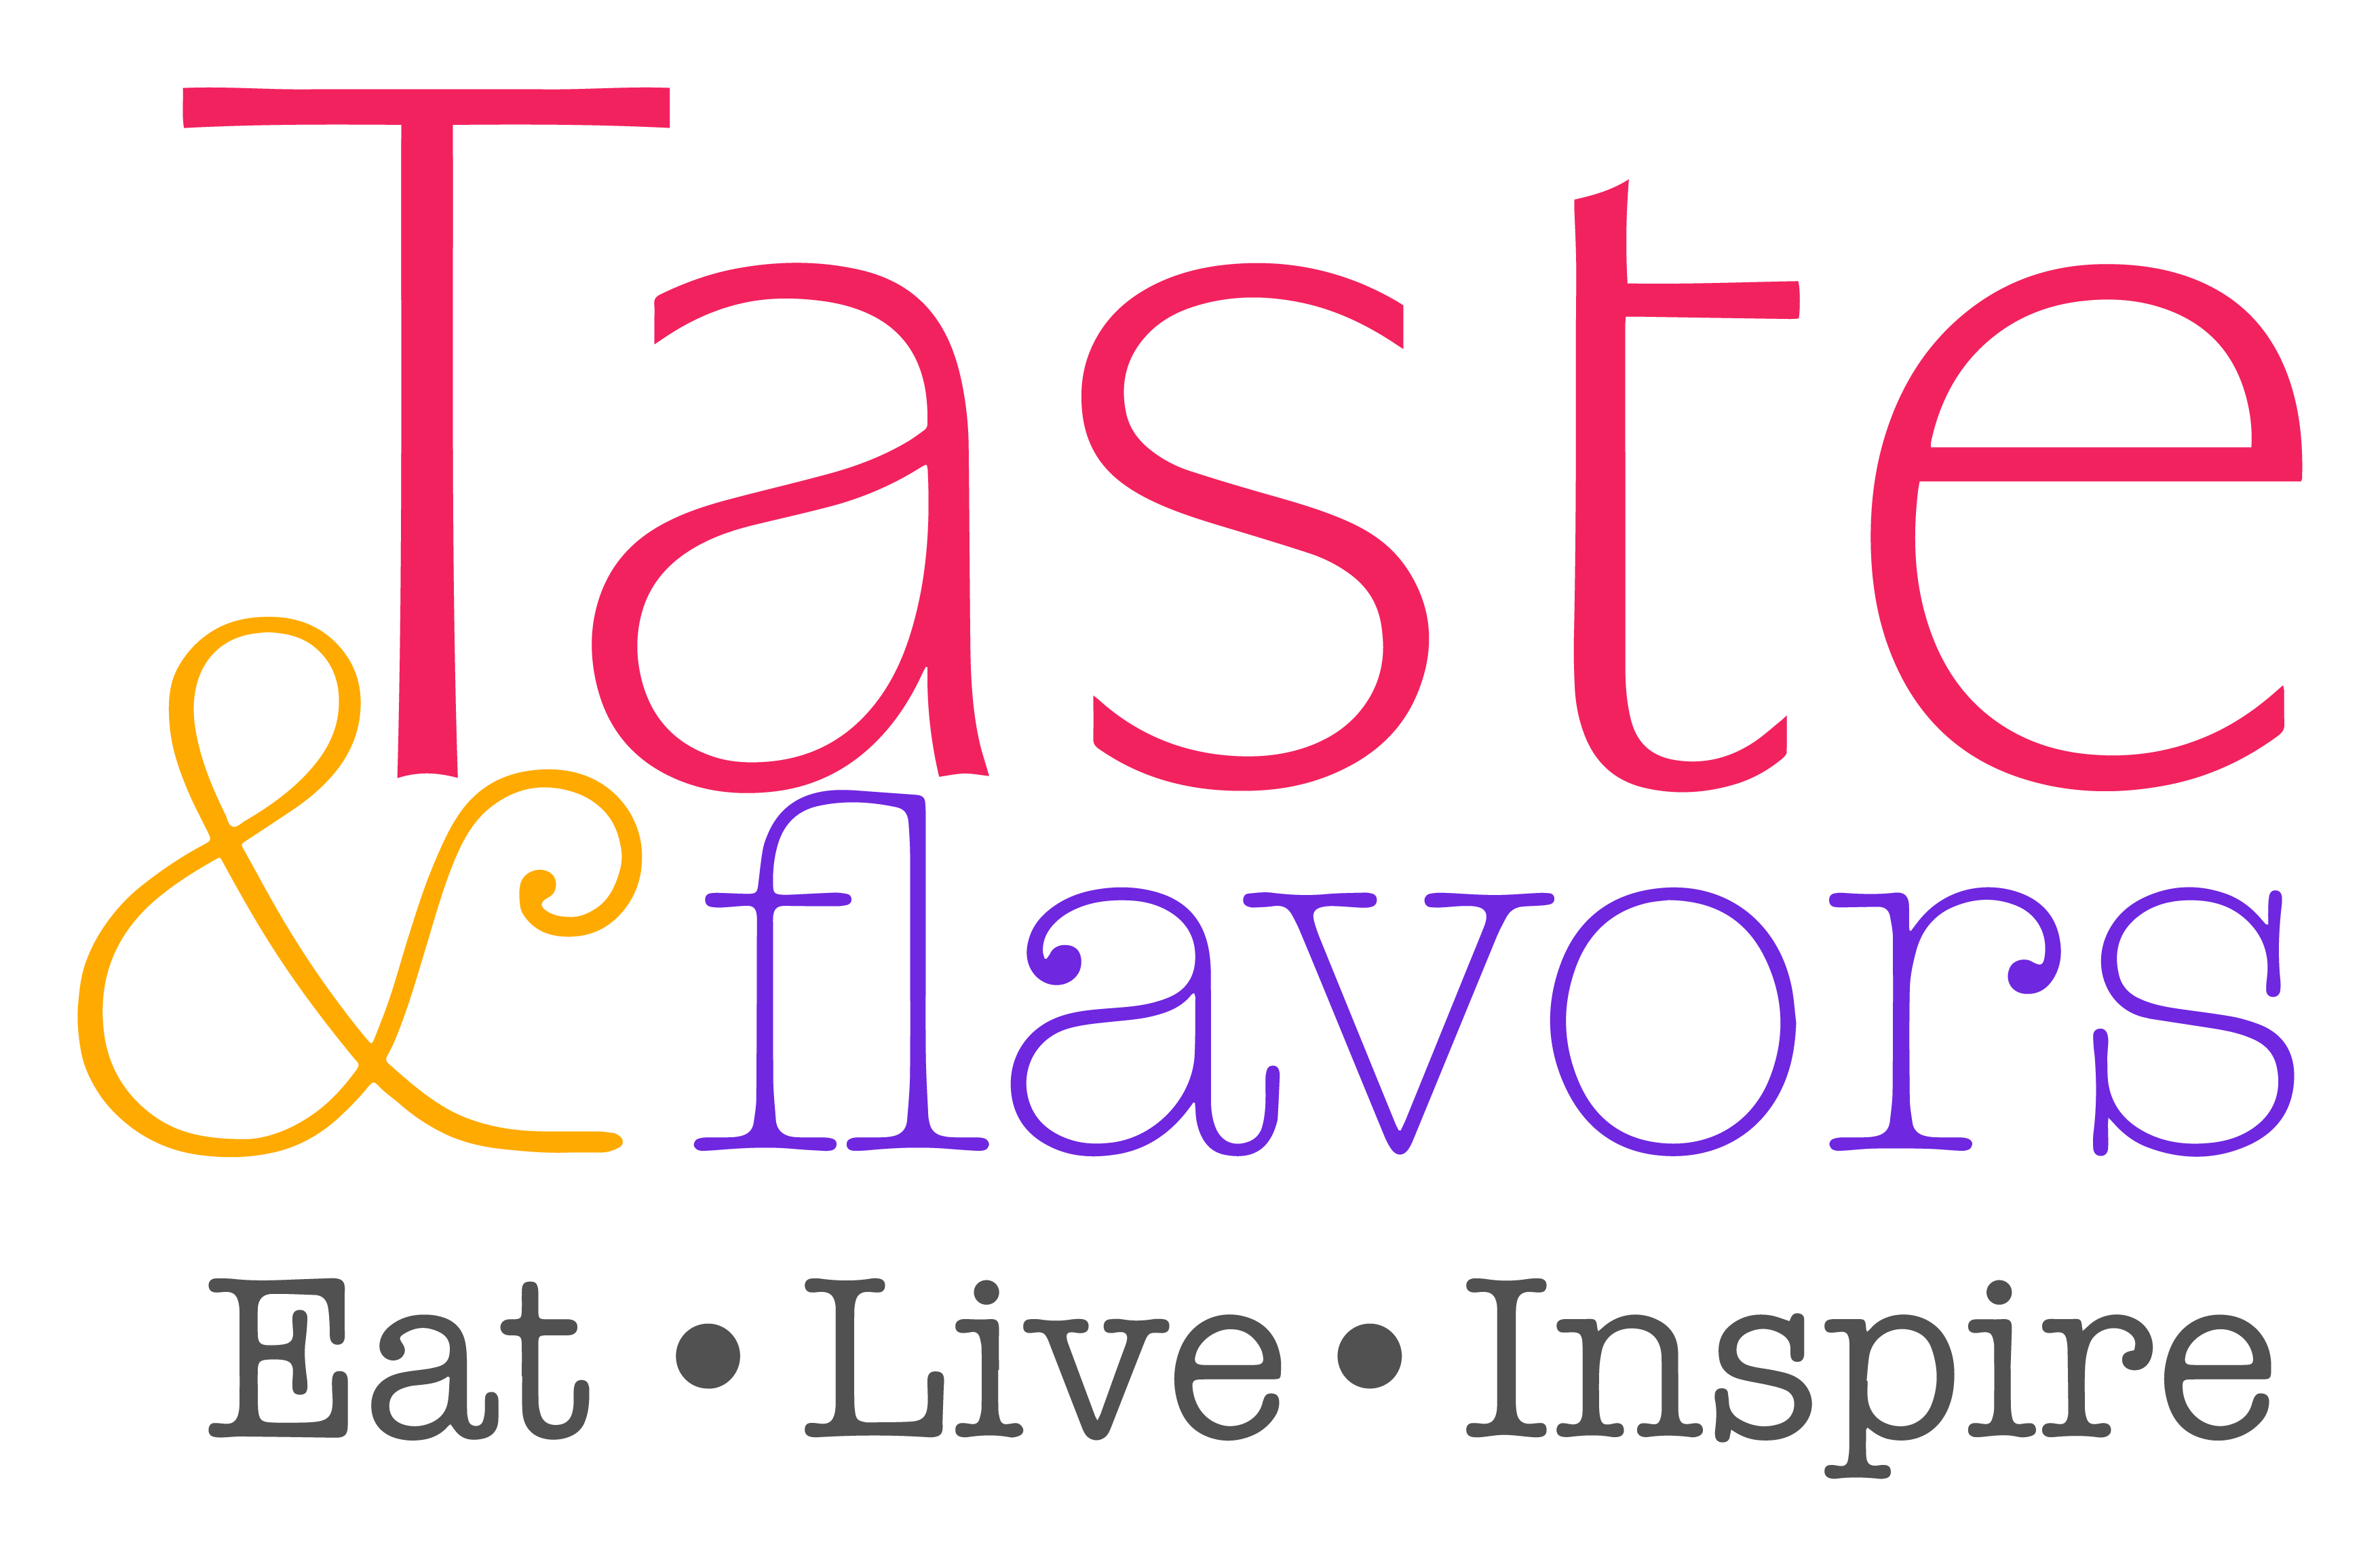 Taste & Flavors